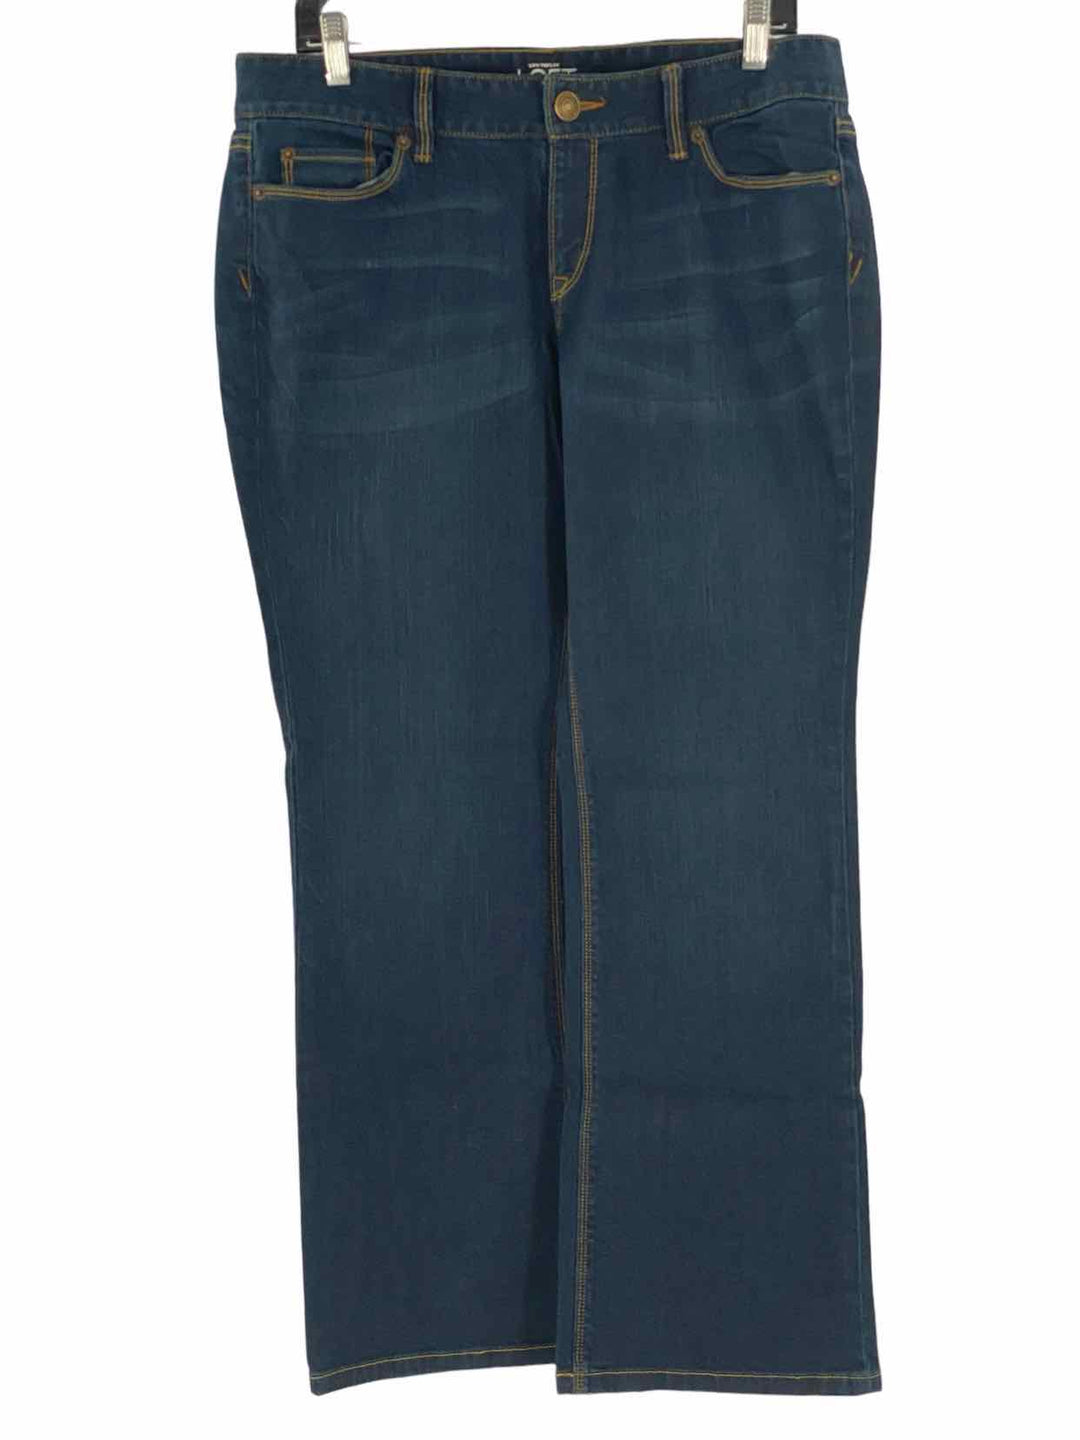 Loft Size 12 Blue Jeans